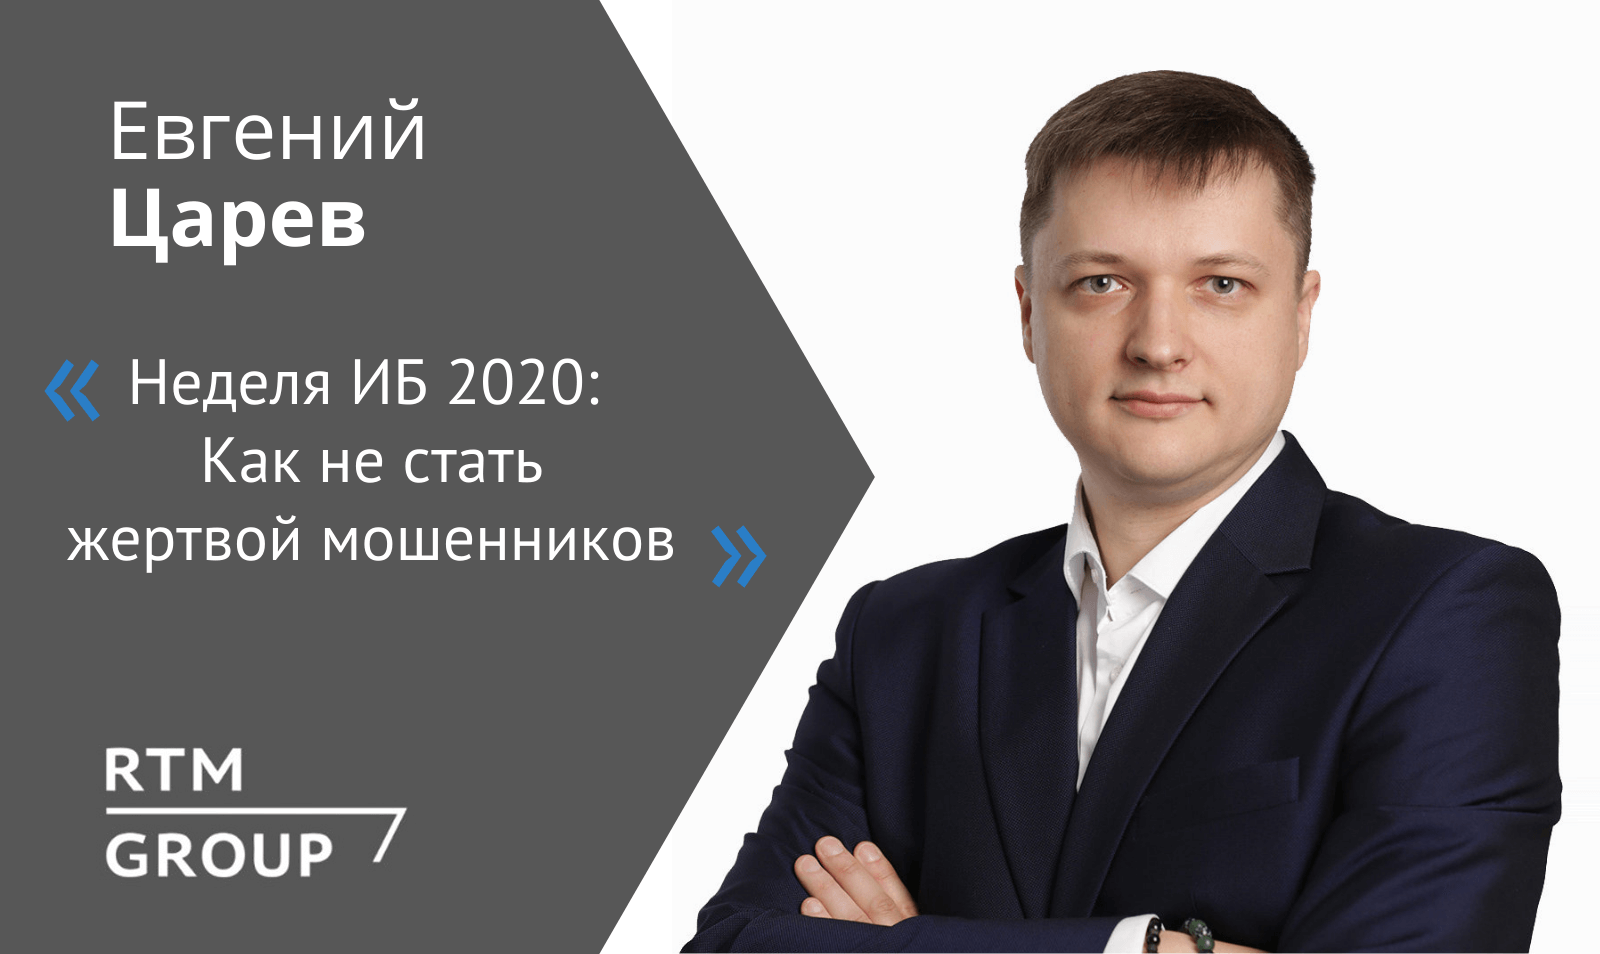 Евгений Царев дал интервью «Банк Санкт-Петербург» в рамках недели «ИБ 2020»